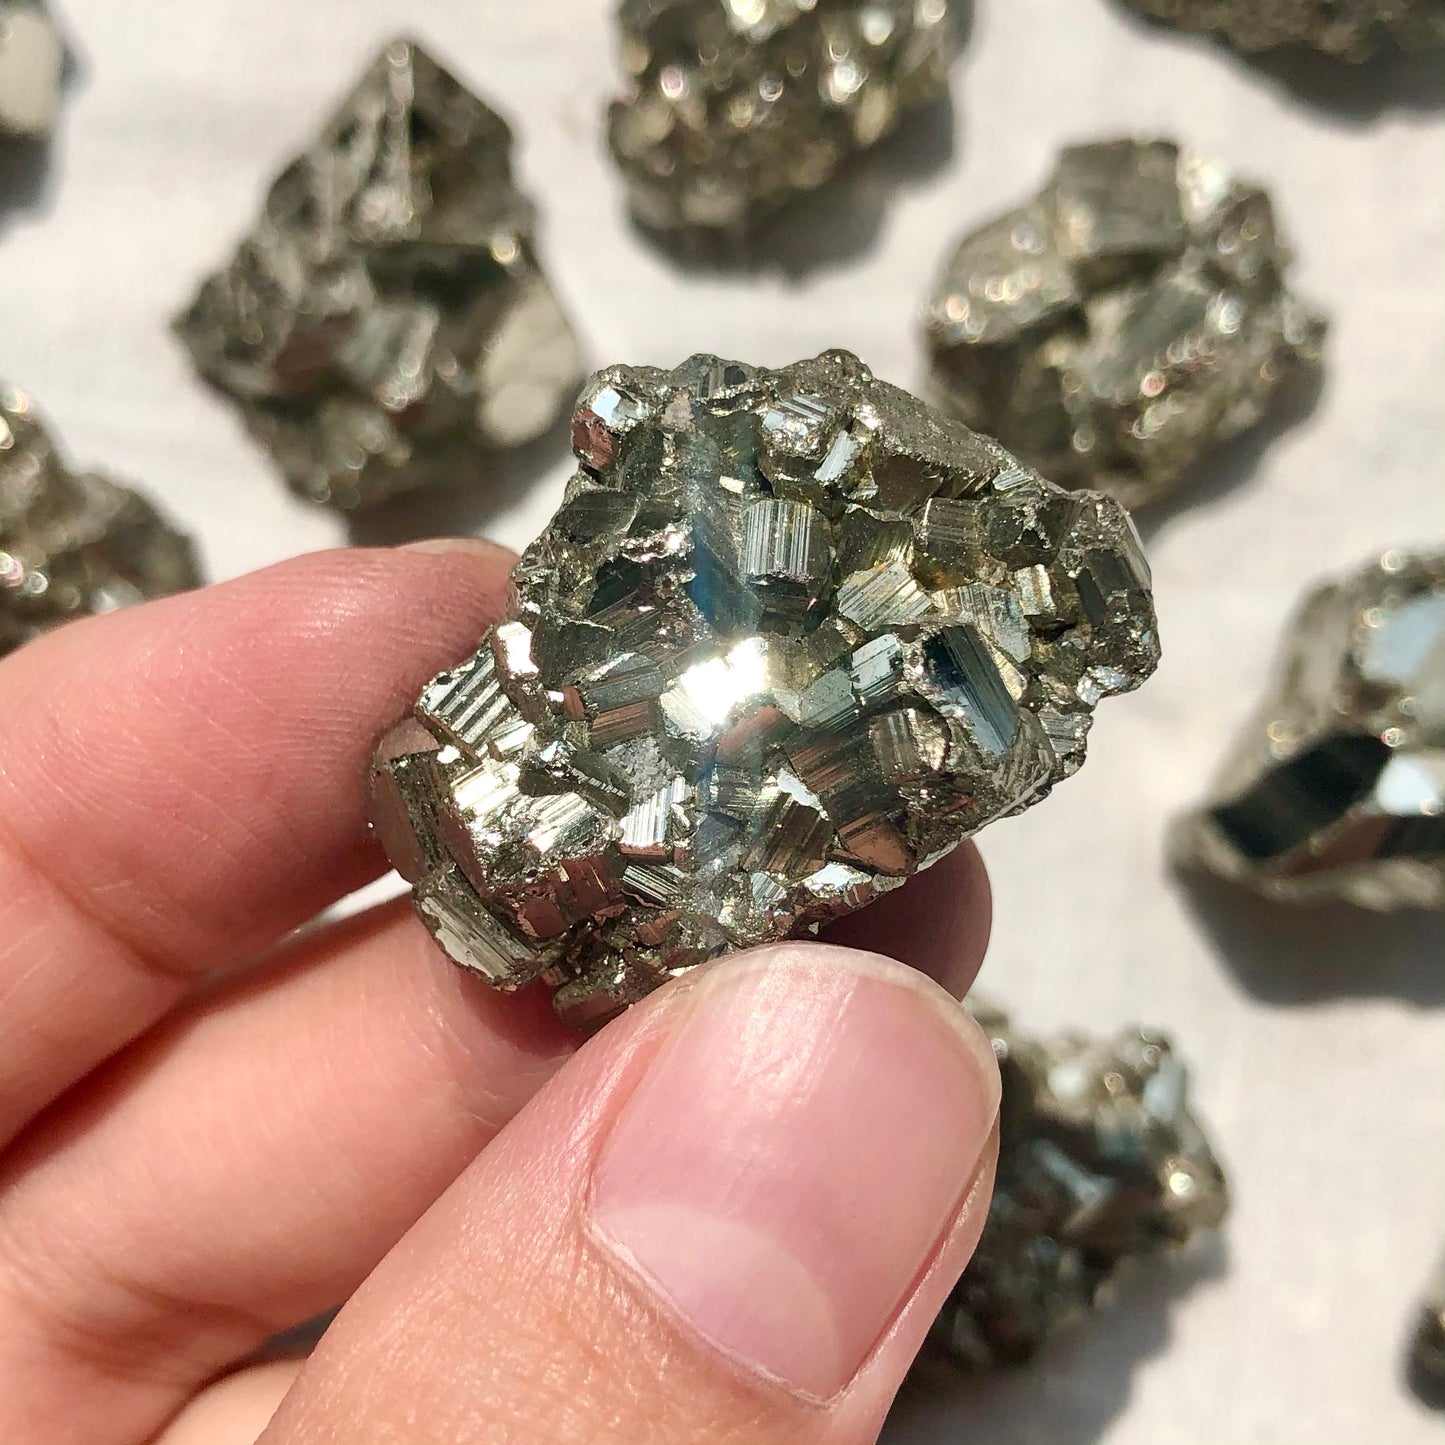 Pyrite Mini Cluster